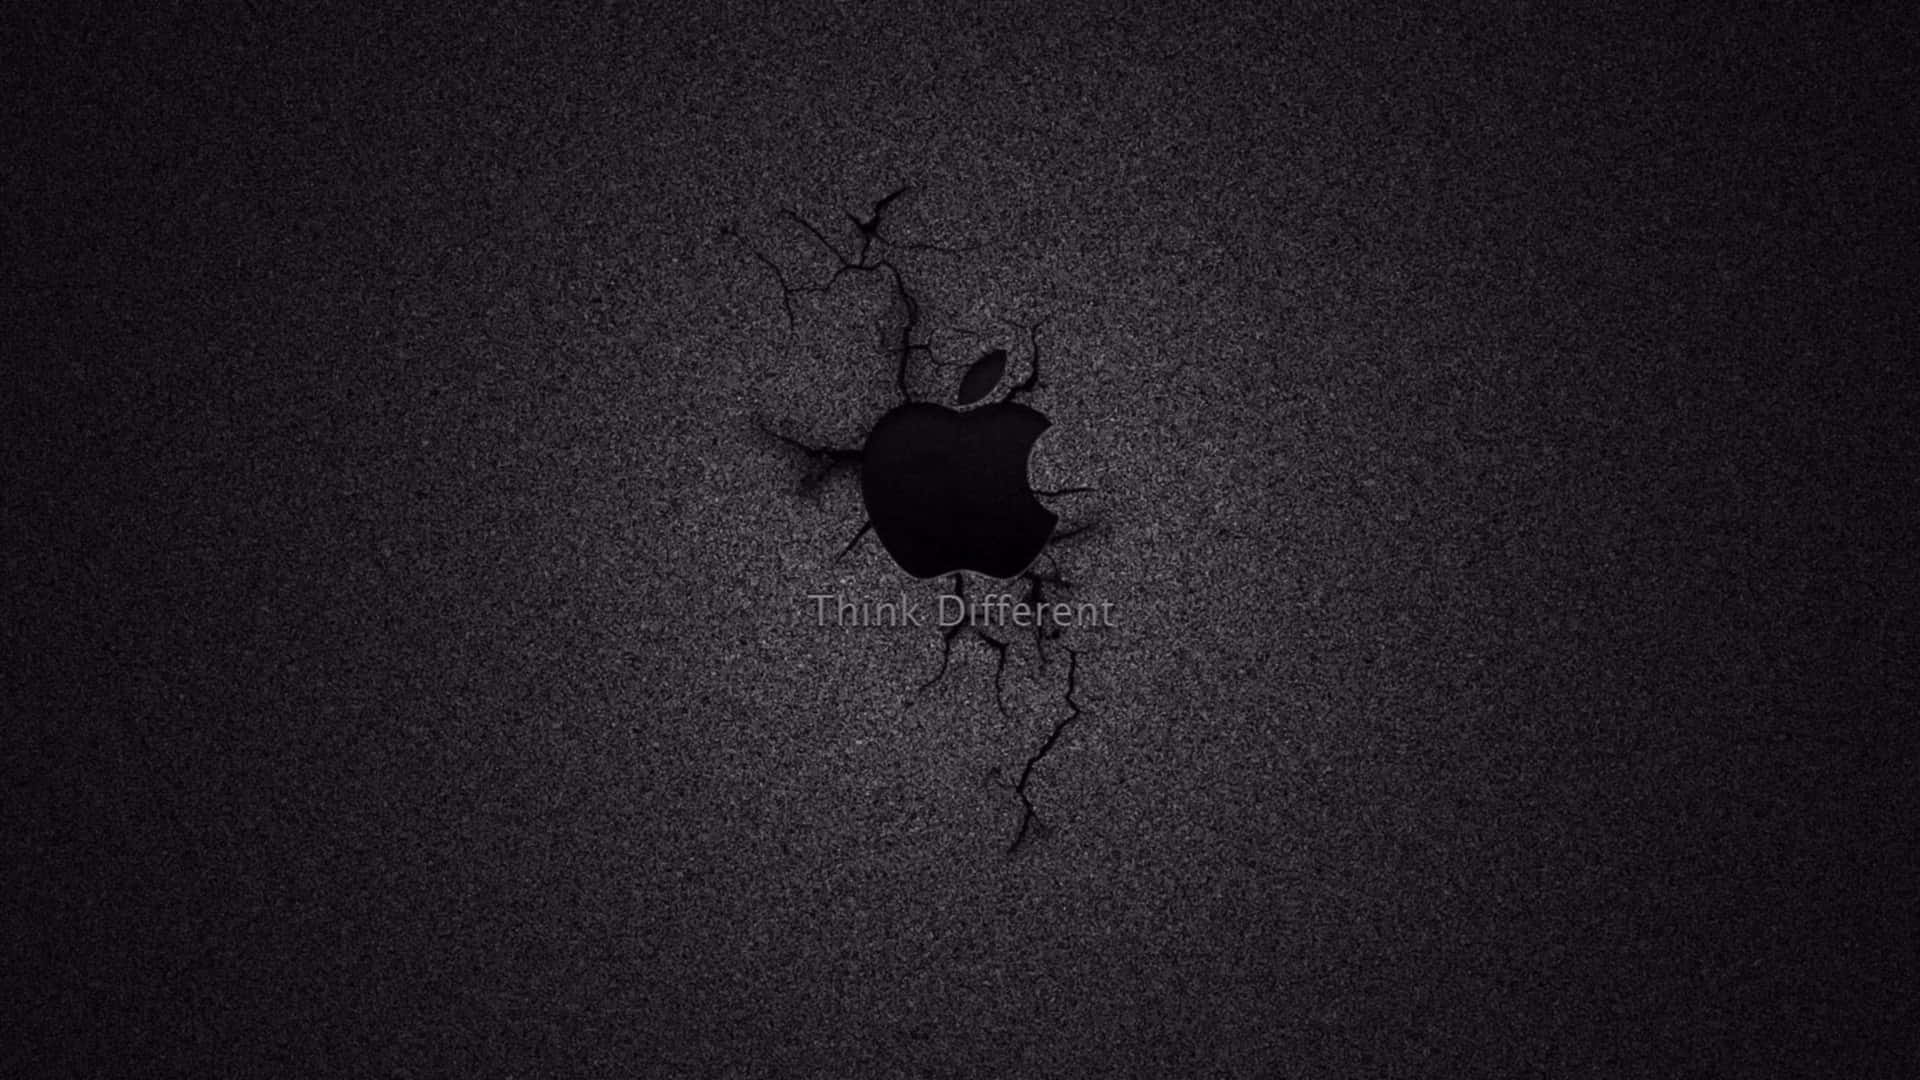 Crisp 4K Detail of an Apple Logo